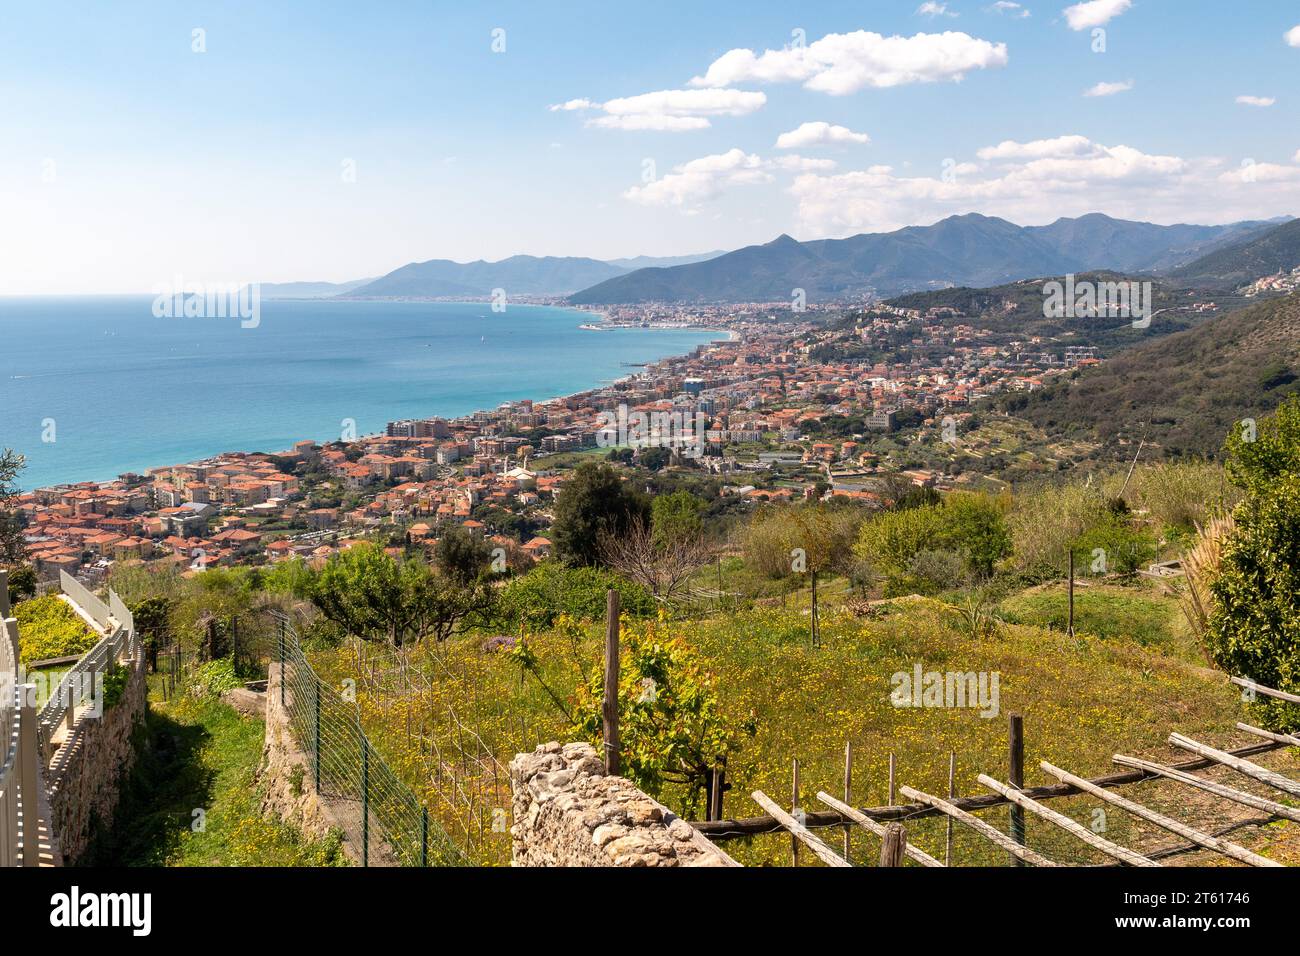 Blick auf die PalmenRiviera von einem Terrassenfeld in Verezzi mit den Küstenstädten Pietra Ligure, Loano und der Gallinara Insel, Savona, Ligurien Stockfoto